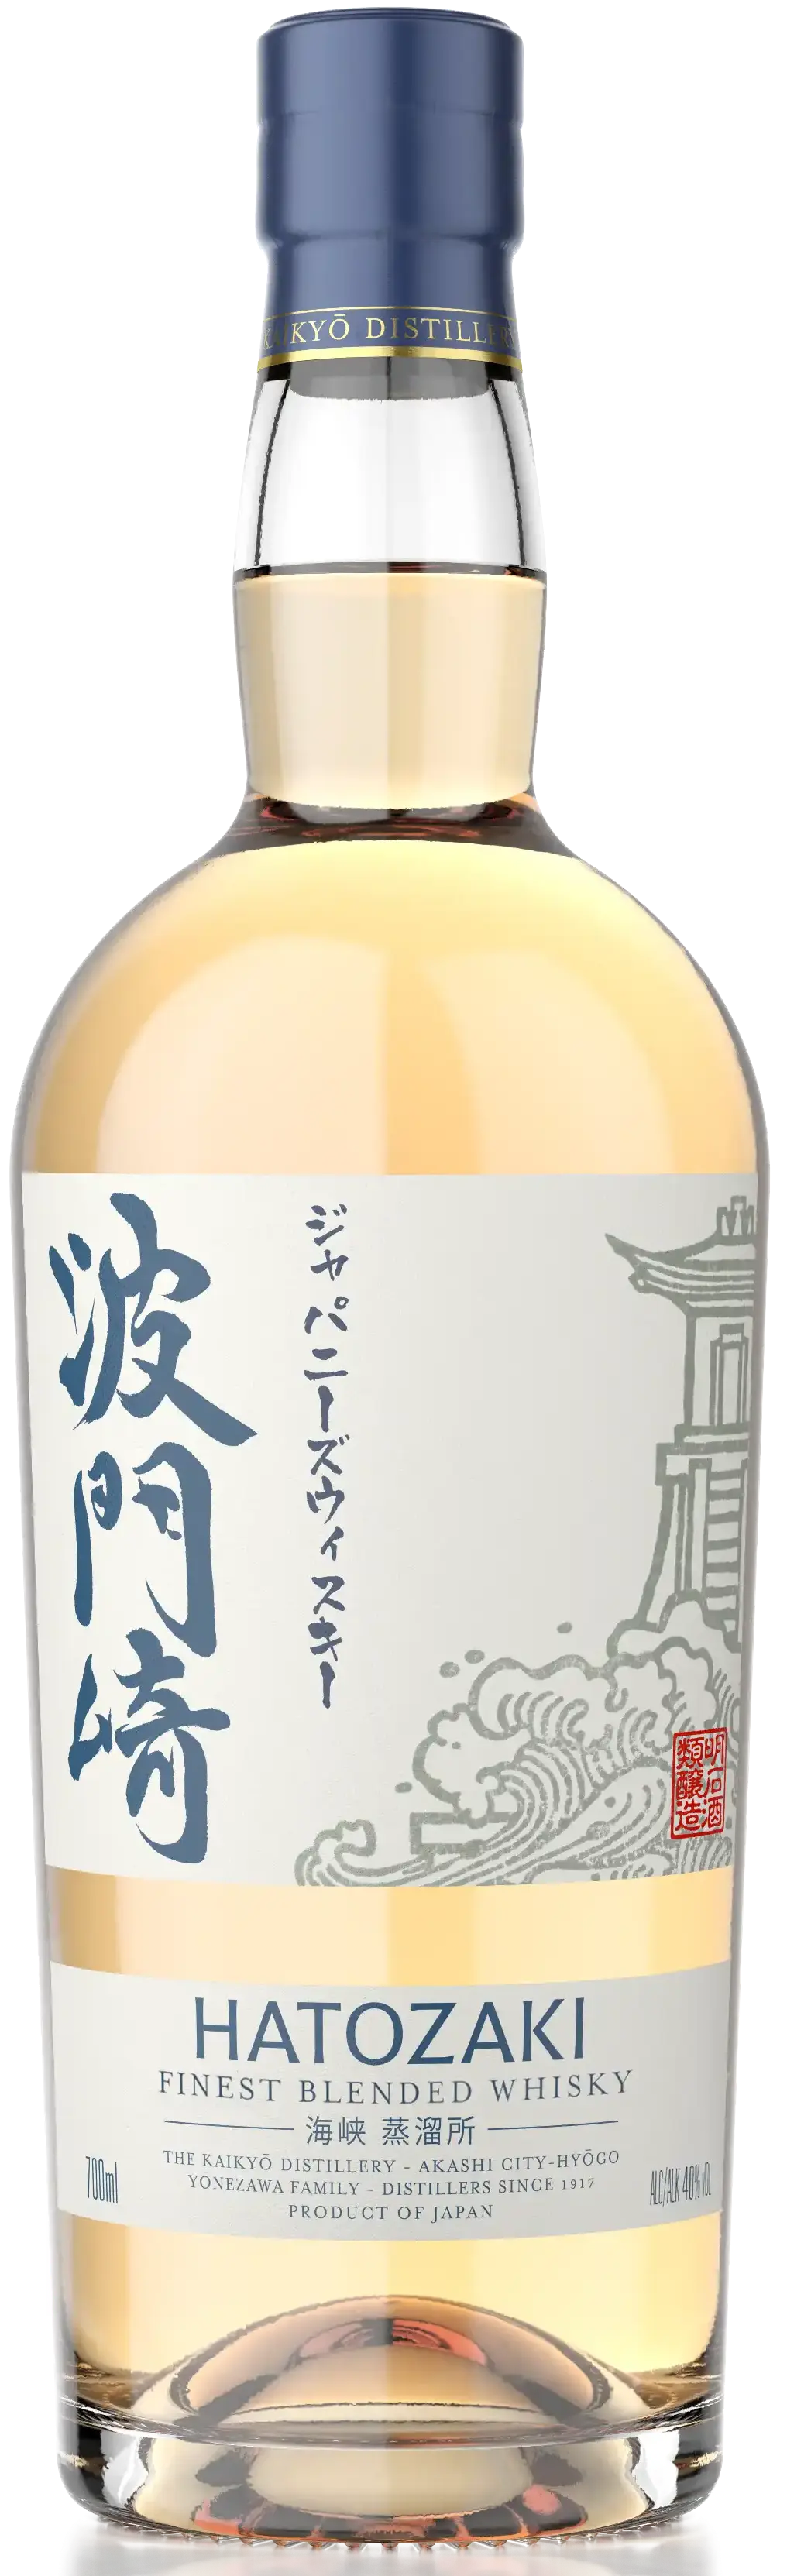 Виски Хатозаки японский 3 года